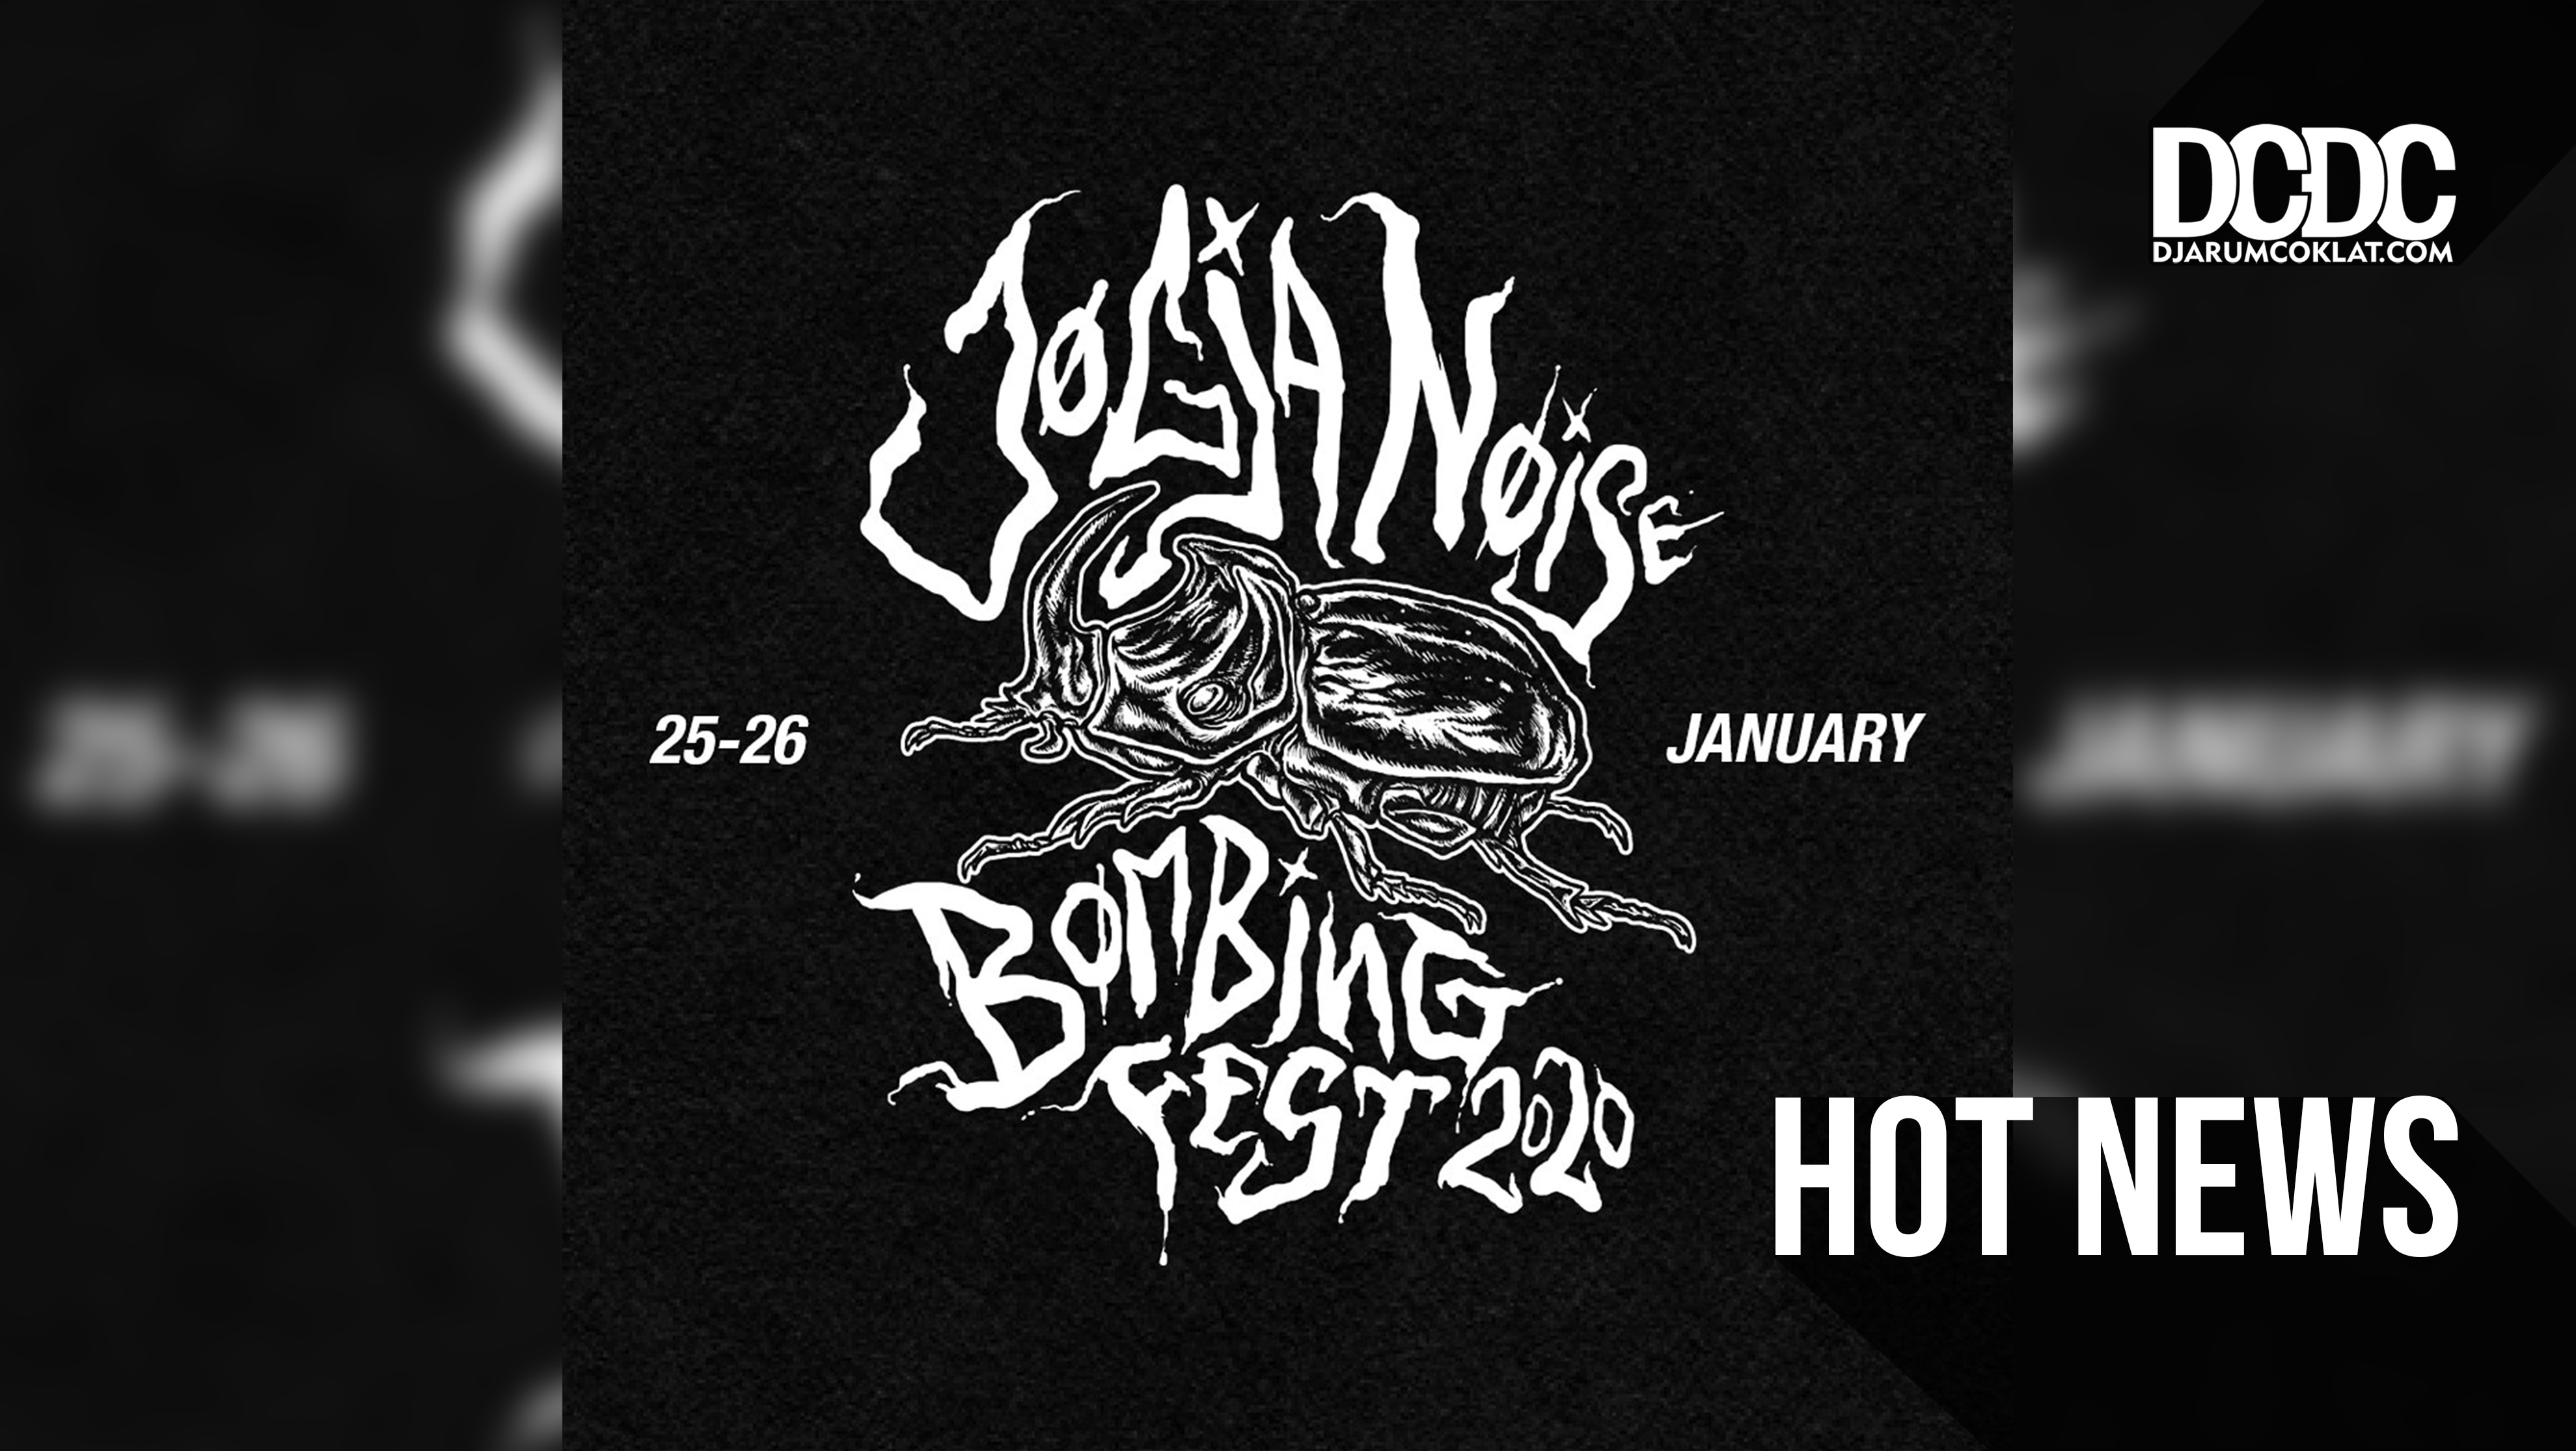 Jogja Noise Bombing Festival 2020 Kombinasikan Musik dan Film Dokumenter